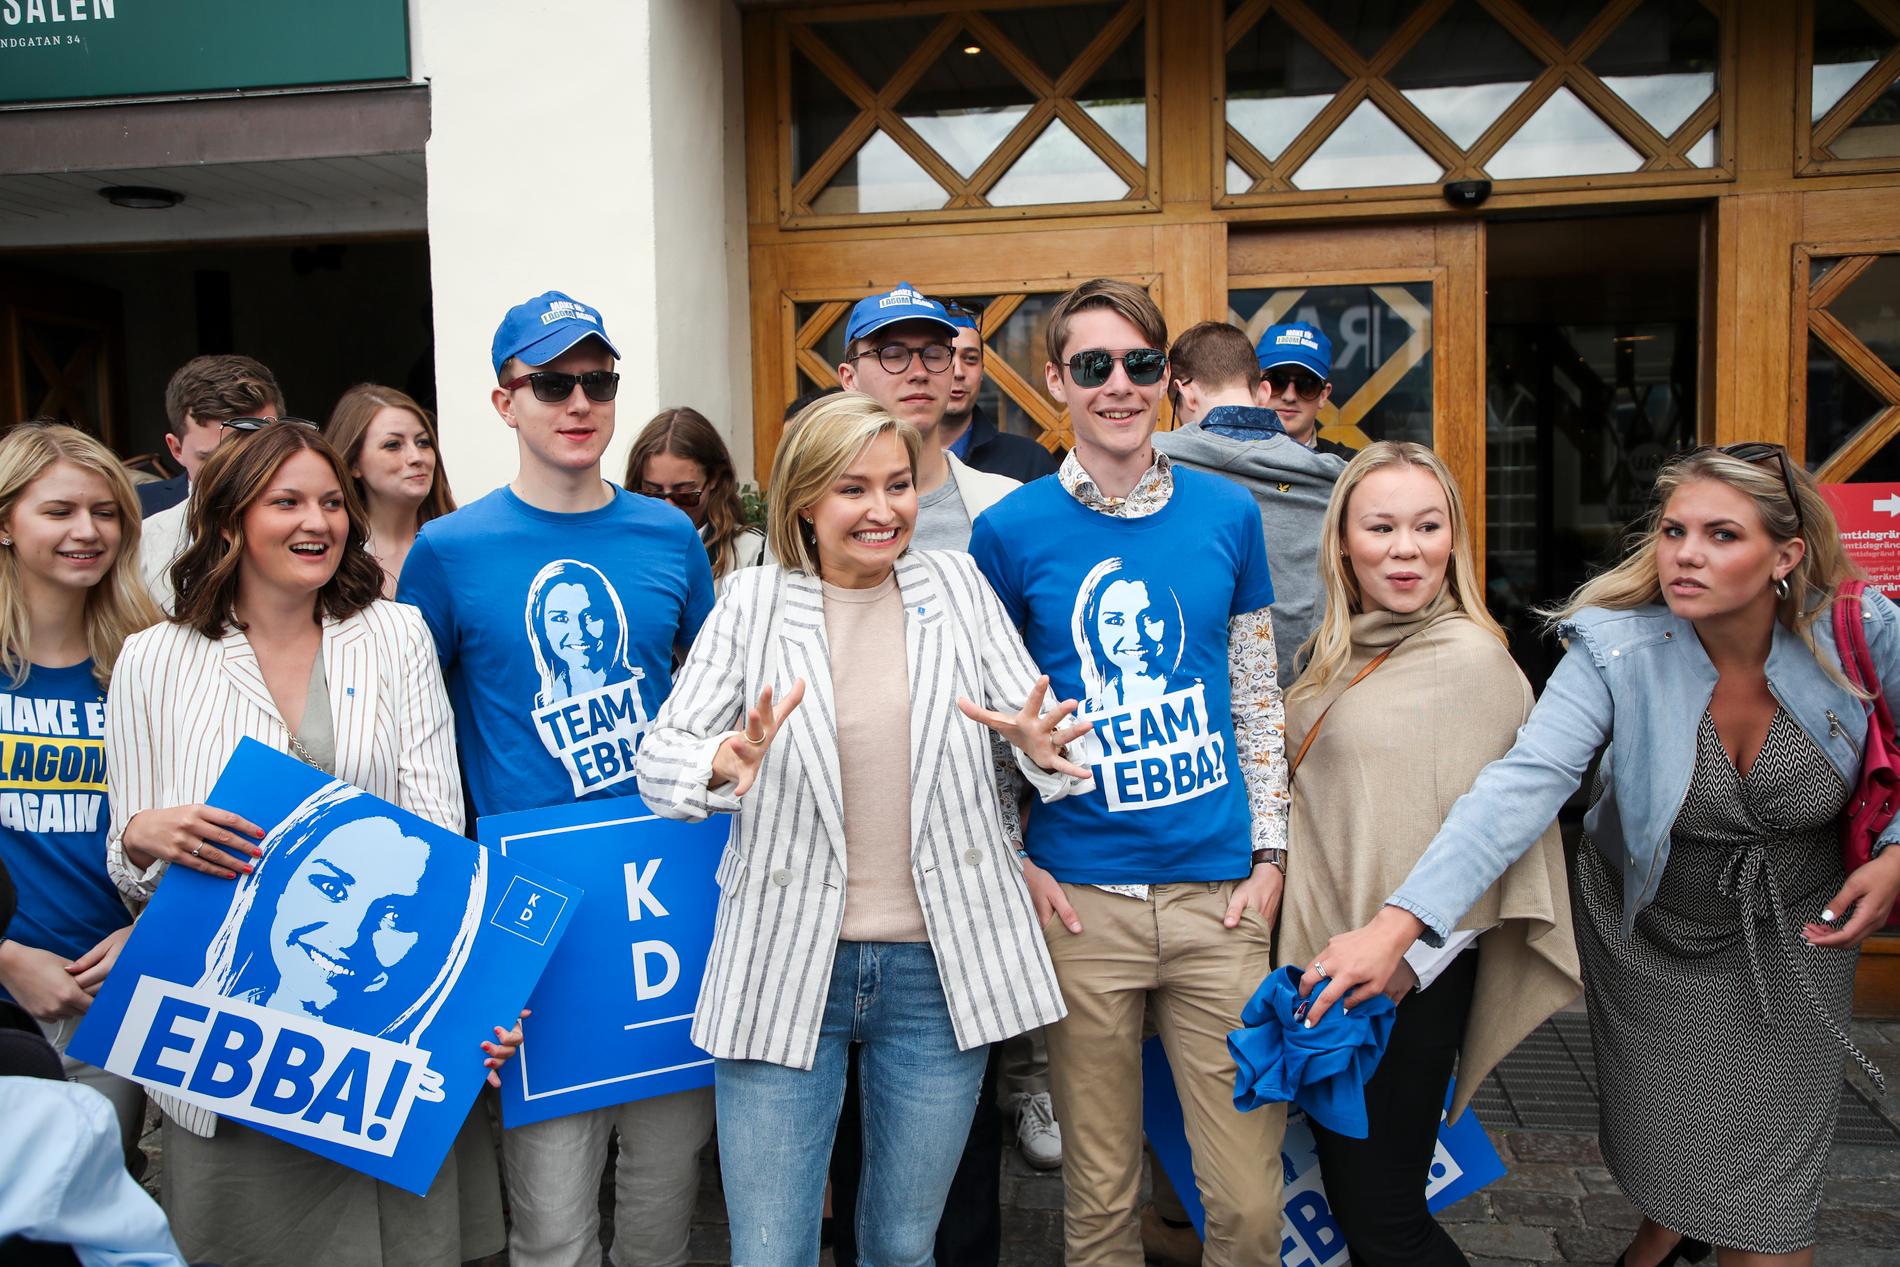 Kristdemokraternas partiledare Ebba Busch Thor anländer till politikerveckan i Almedalen.